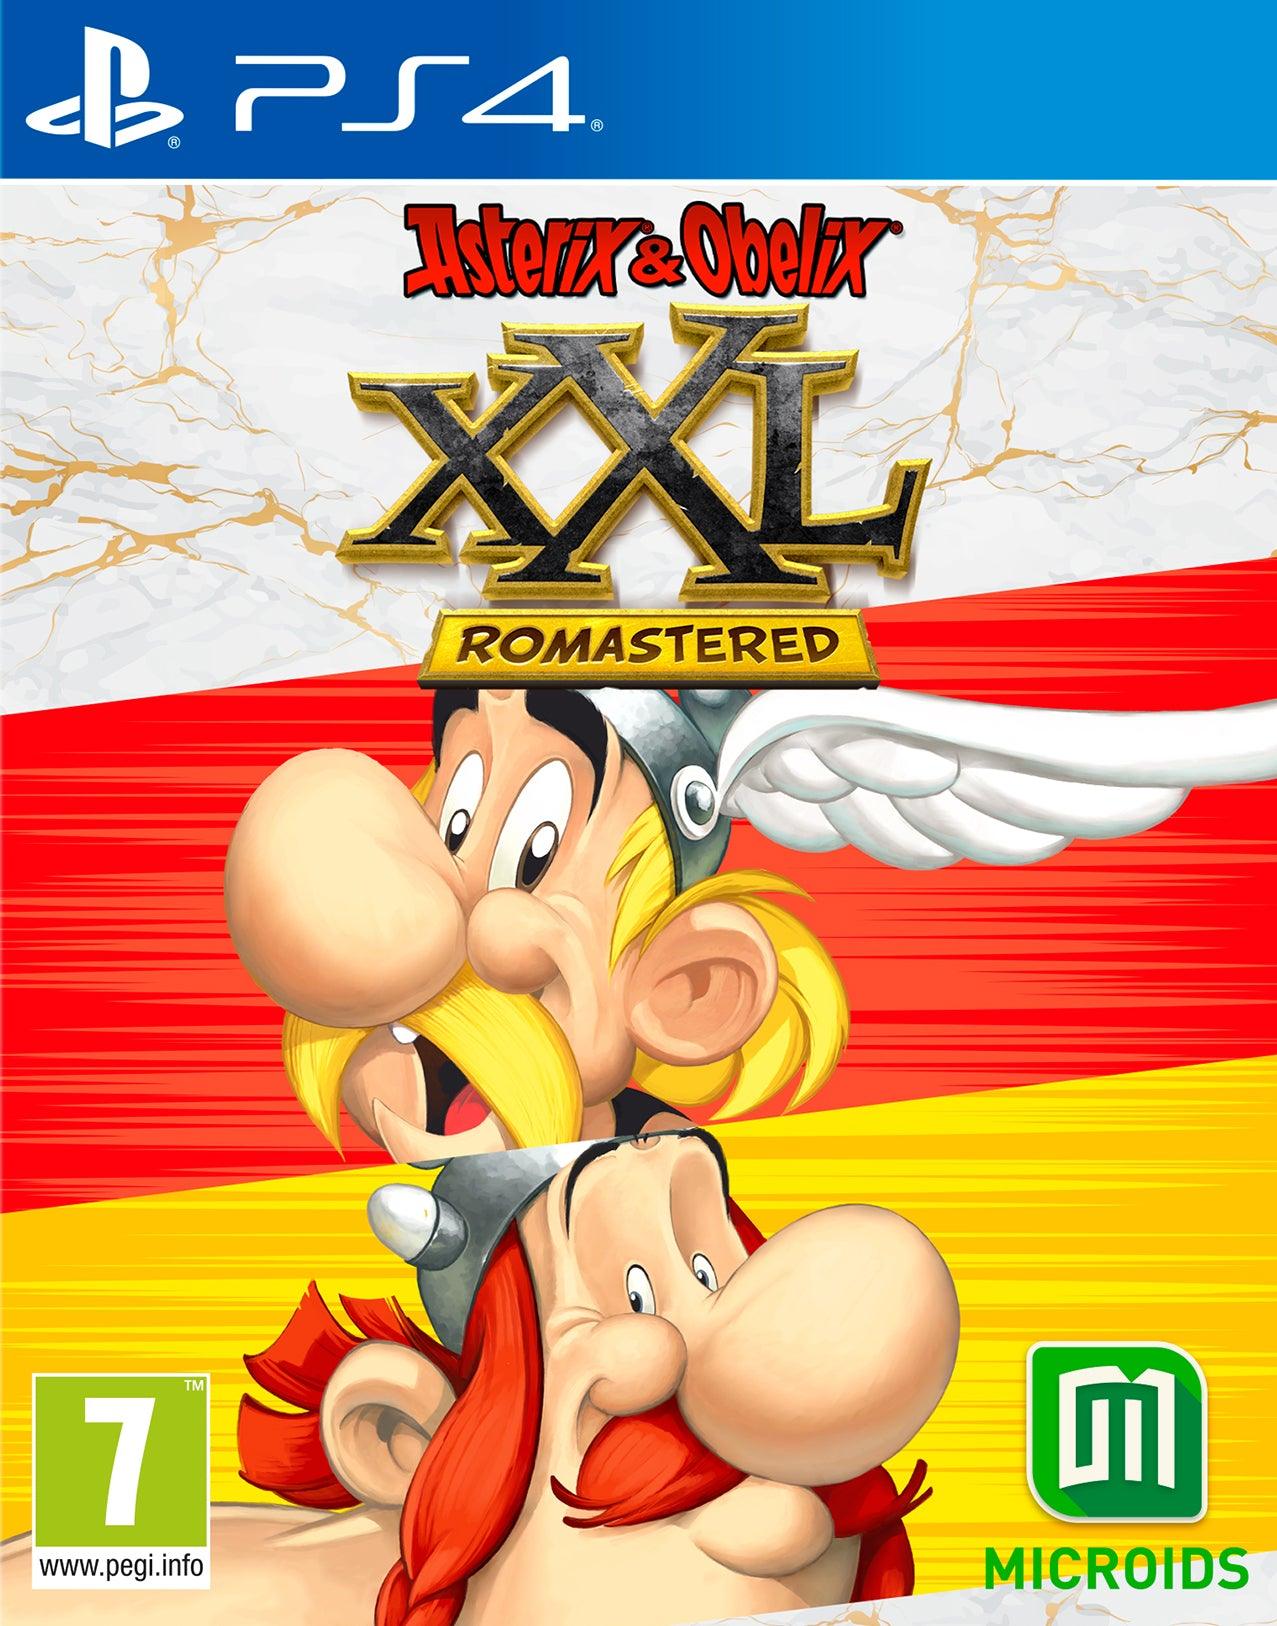 Asterix & Obelix Xxl Rmstrd - Want a New Gadget